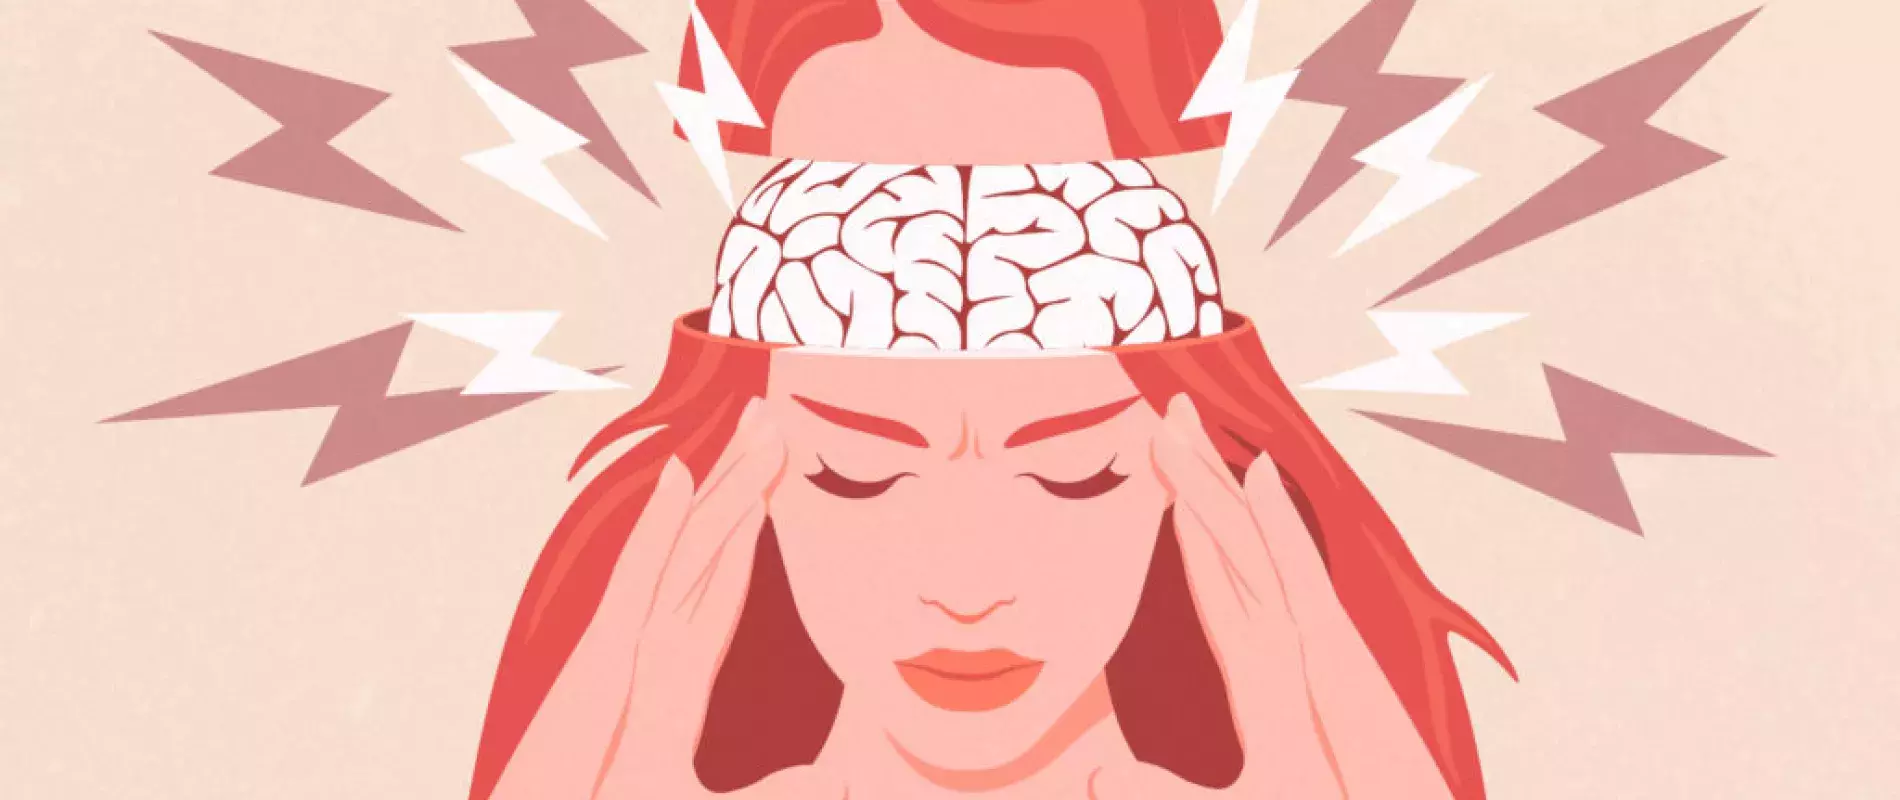 Bandeau magnétique de tête : migraines, céphalées